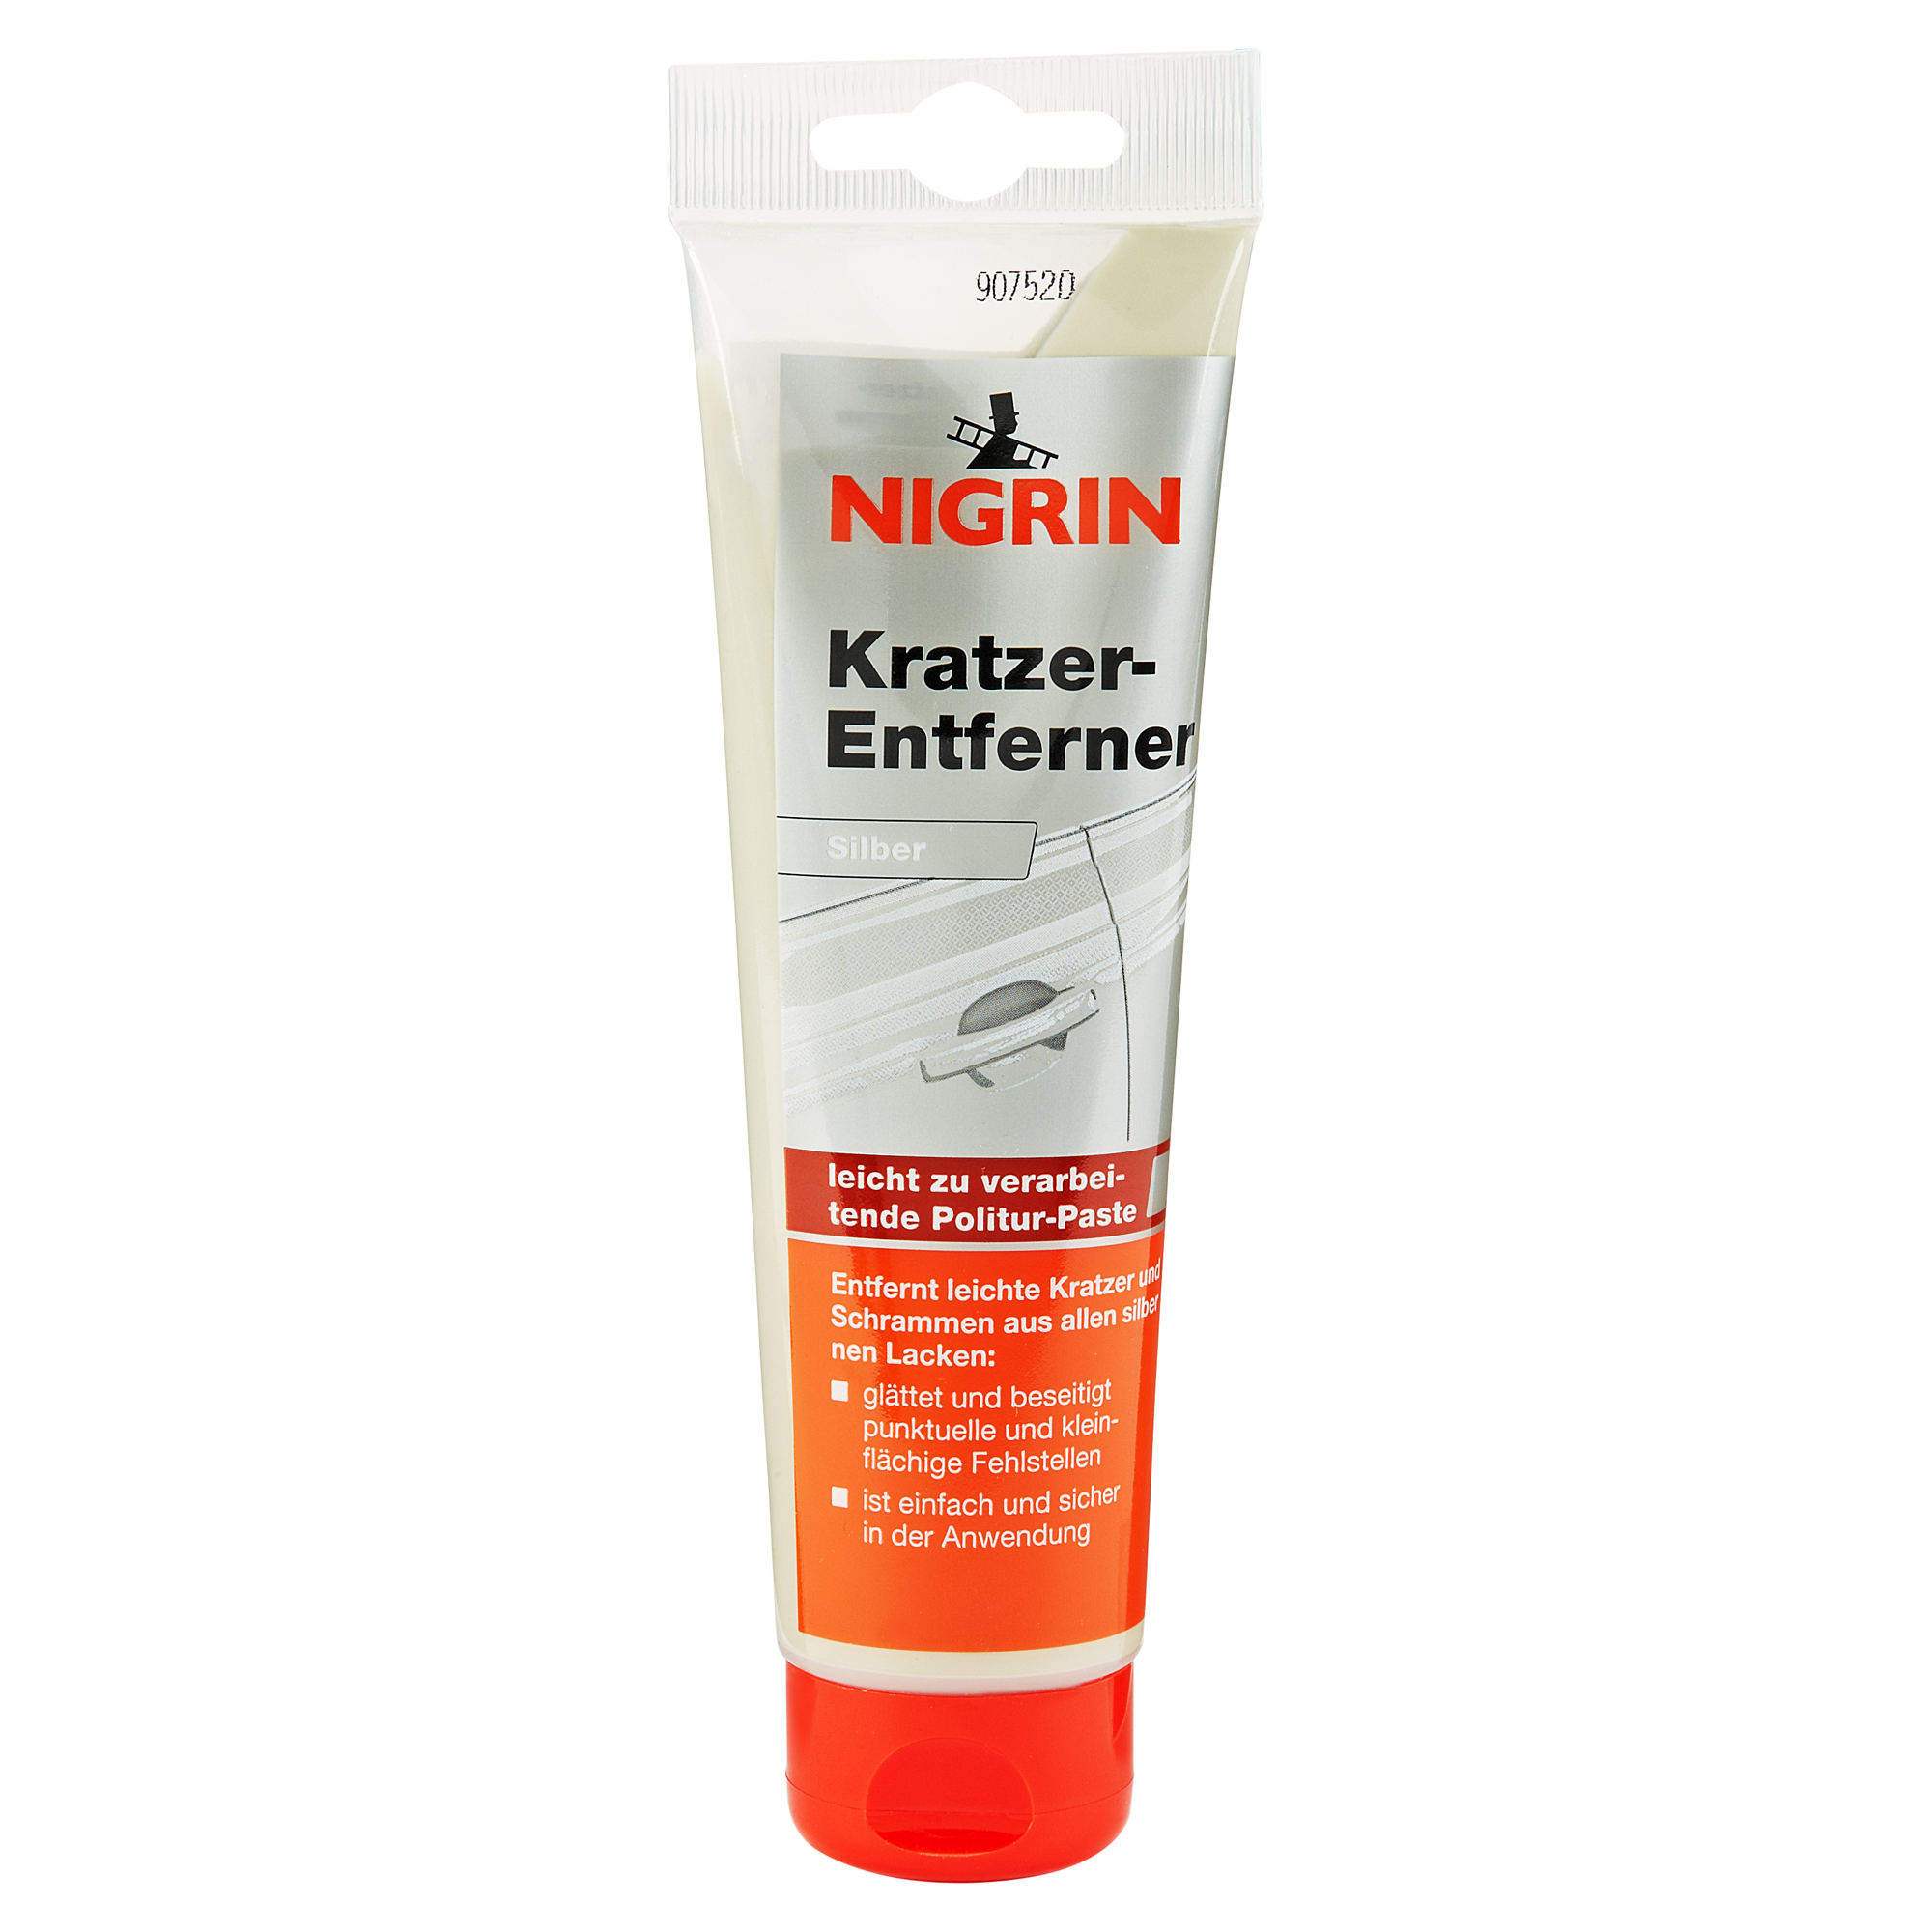 Kratzer-Entferner silber 150 g + product picture